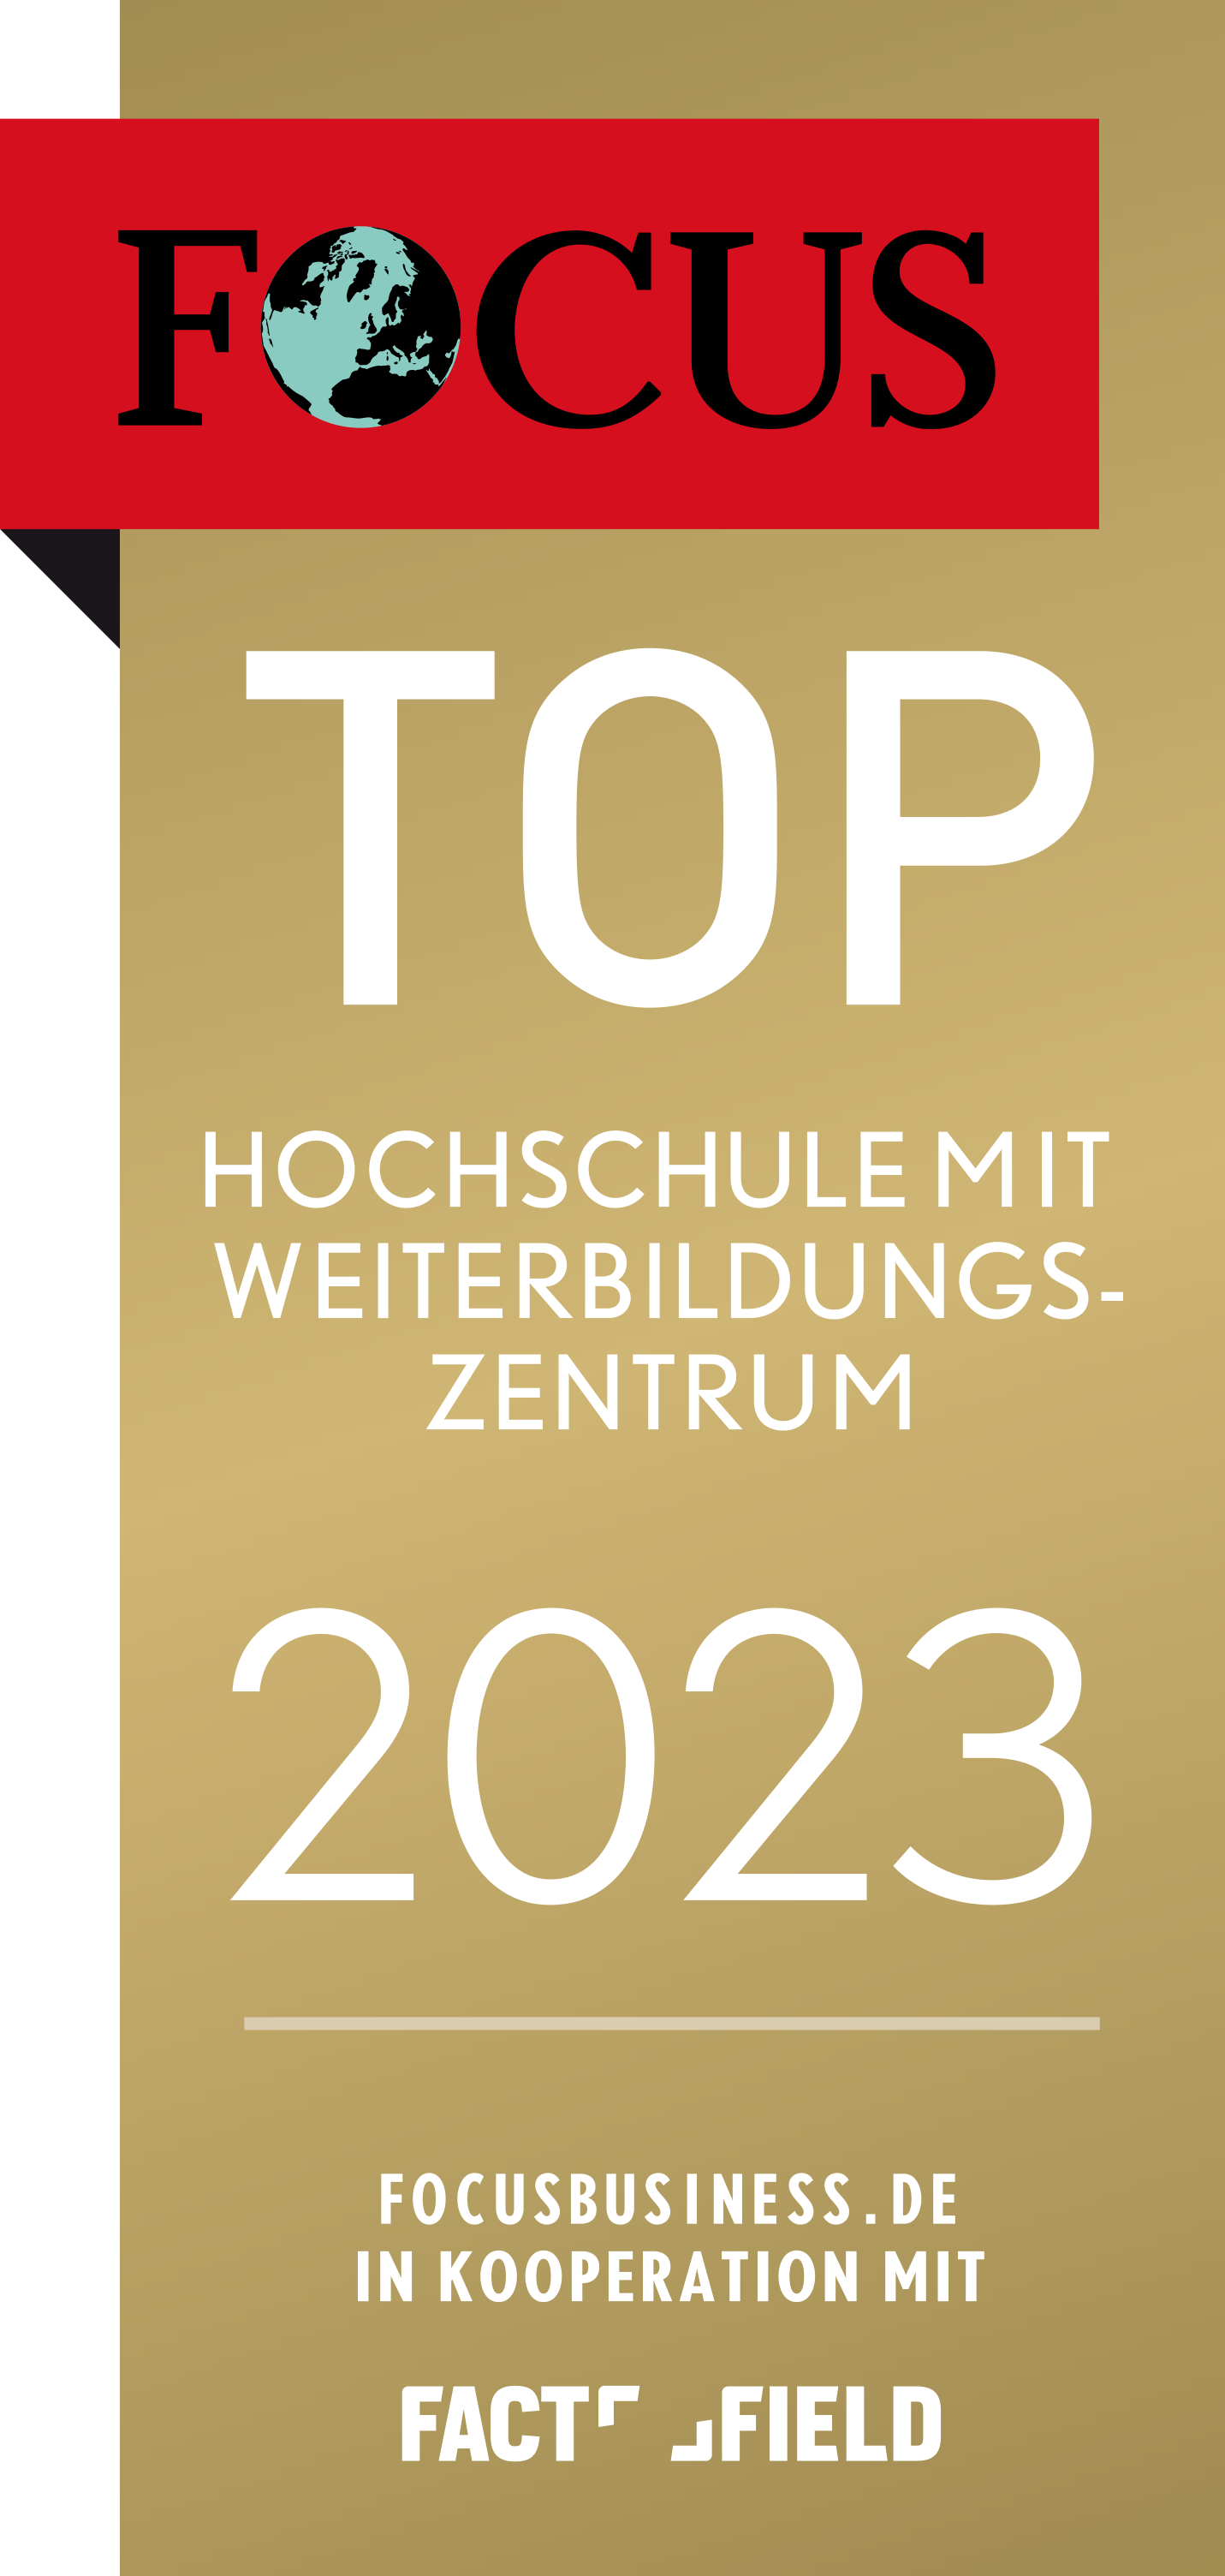 Ausgezeichnet durch Focus Business Magazin als eine der besten Weiterbildungsanbieter Deutschlands